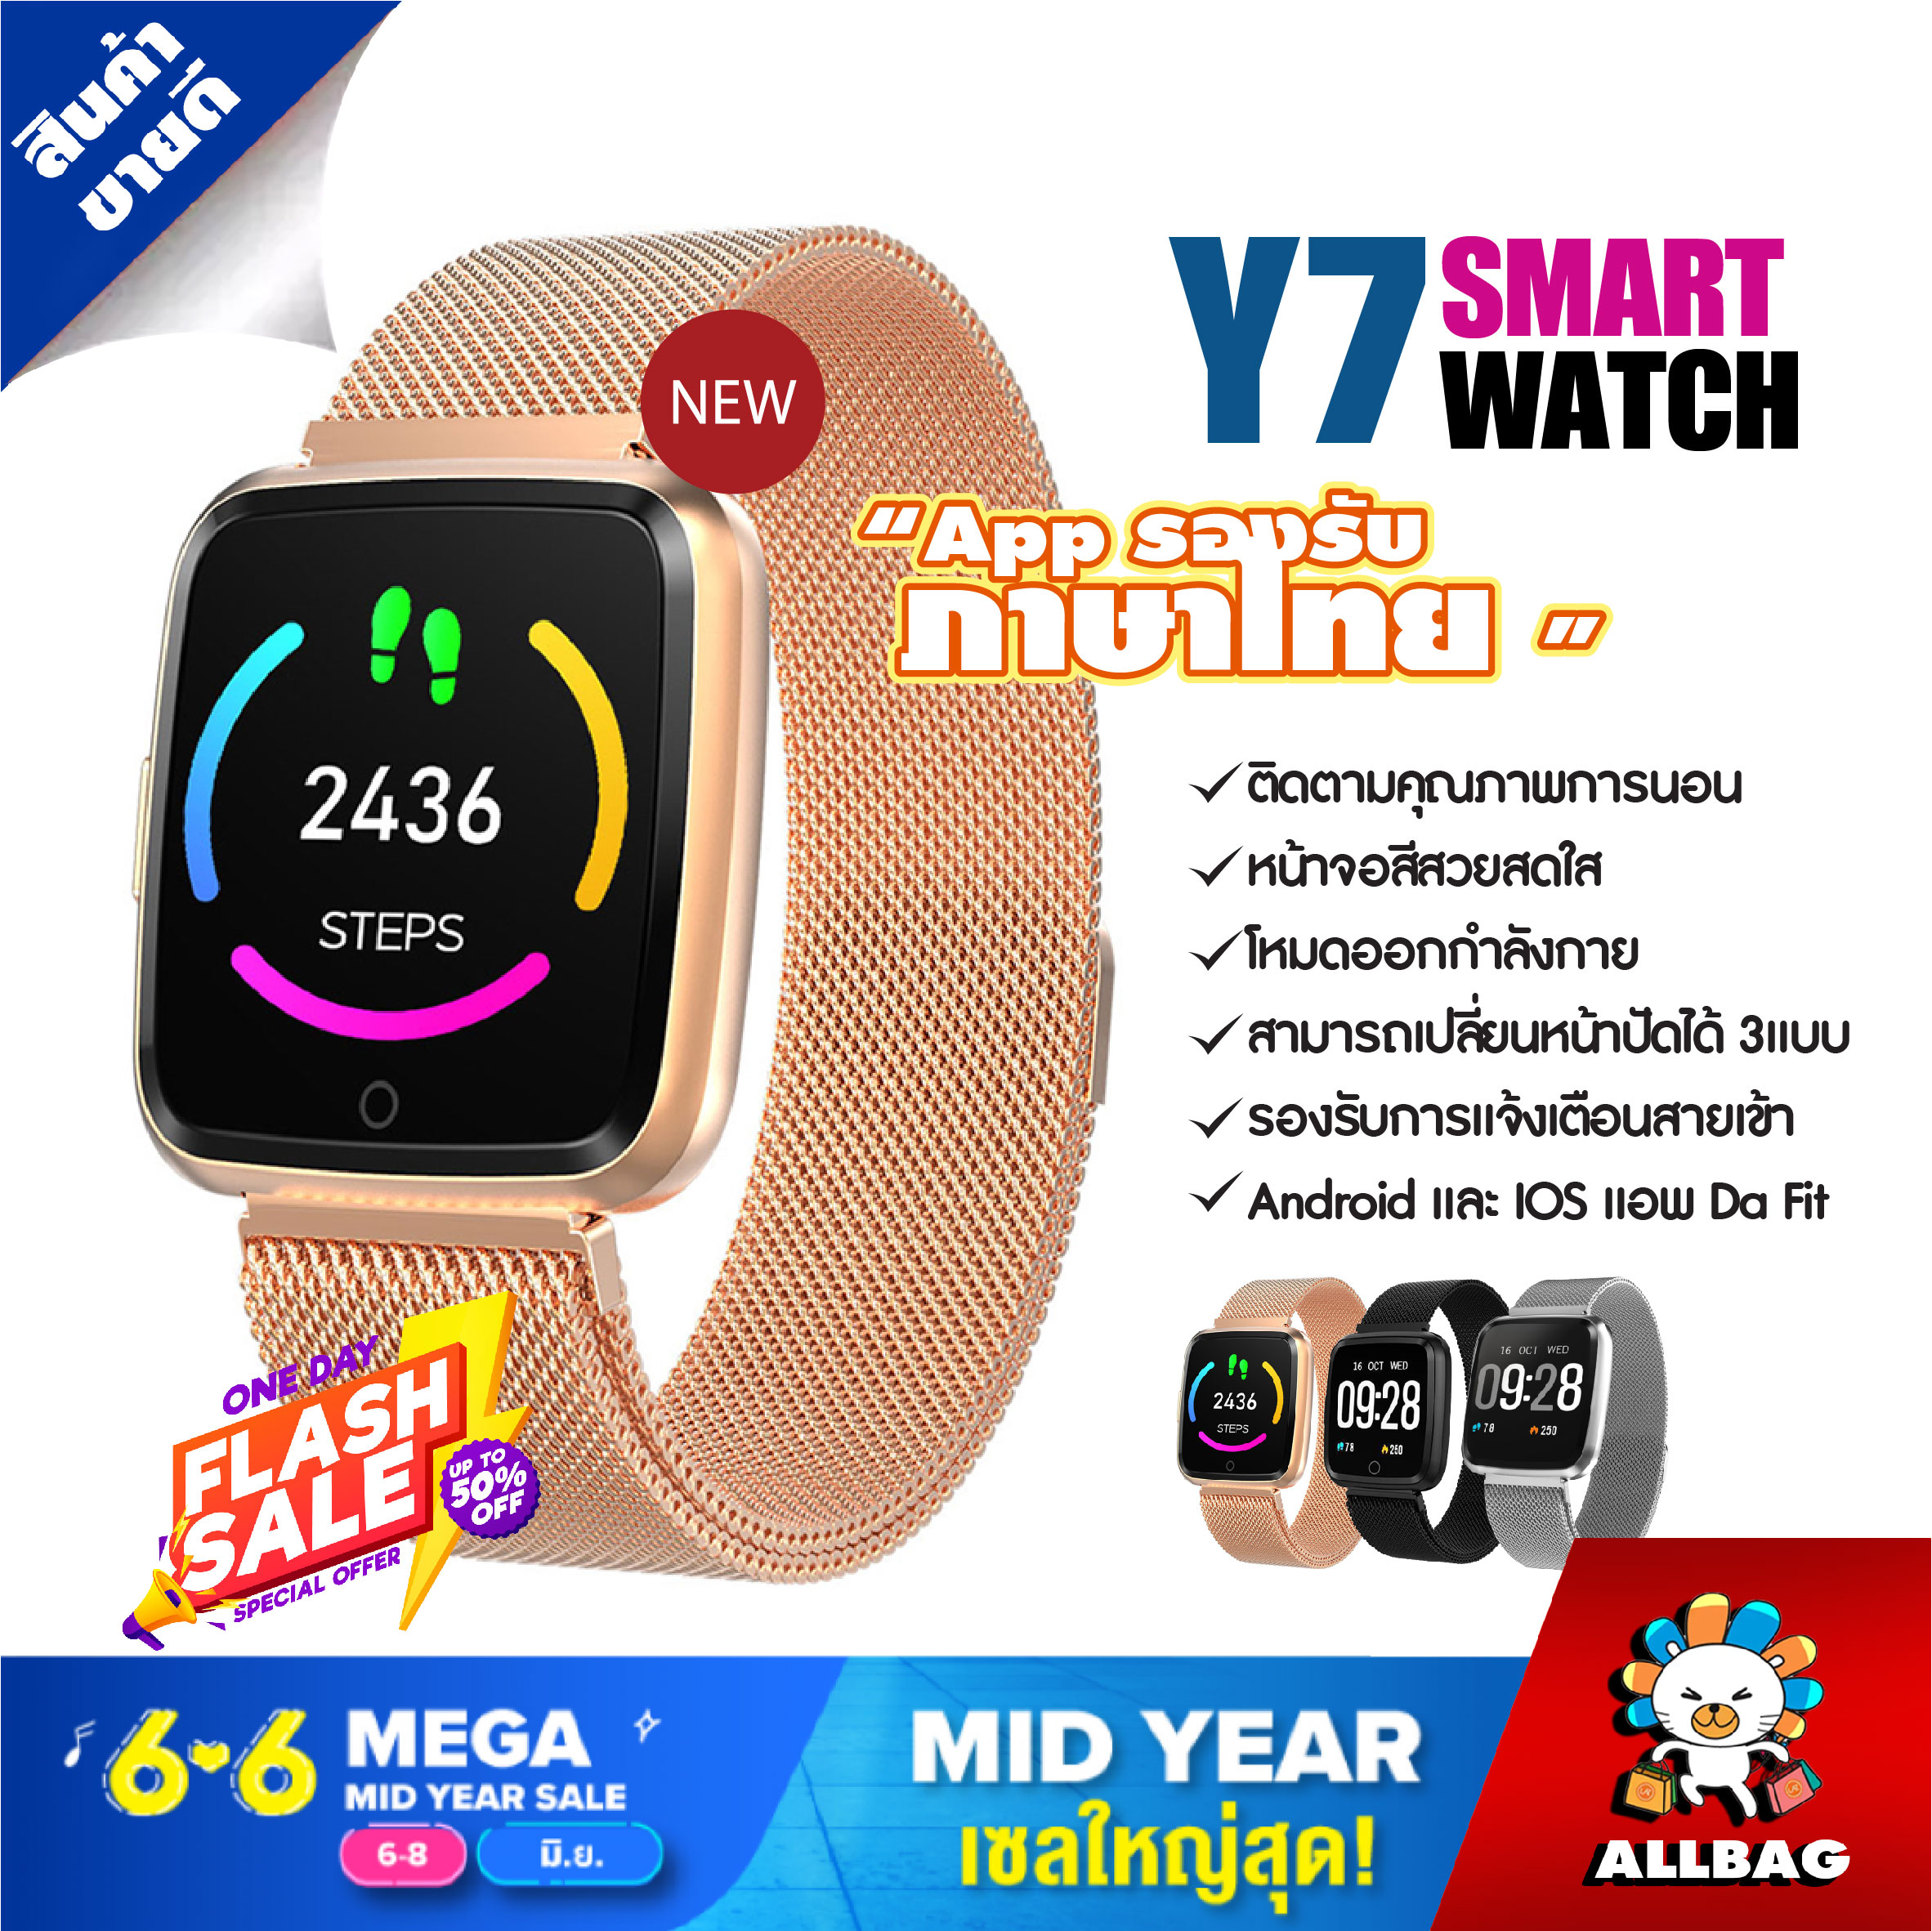 Smart Watch Y7 สายรัดข้อมือเพื่อสุขภาพ นาฬิกาดิจิตอลข้อมือ ระบบทัสสกรีน นาฬิกาจับชีพจร นาฬิกานับก้าว นาฬิกาวัดแคลอรี่ จัดส่ง1-3วัน